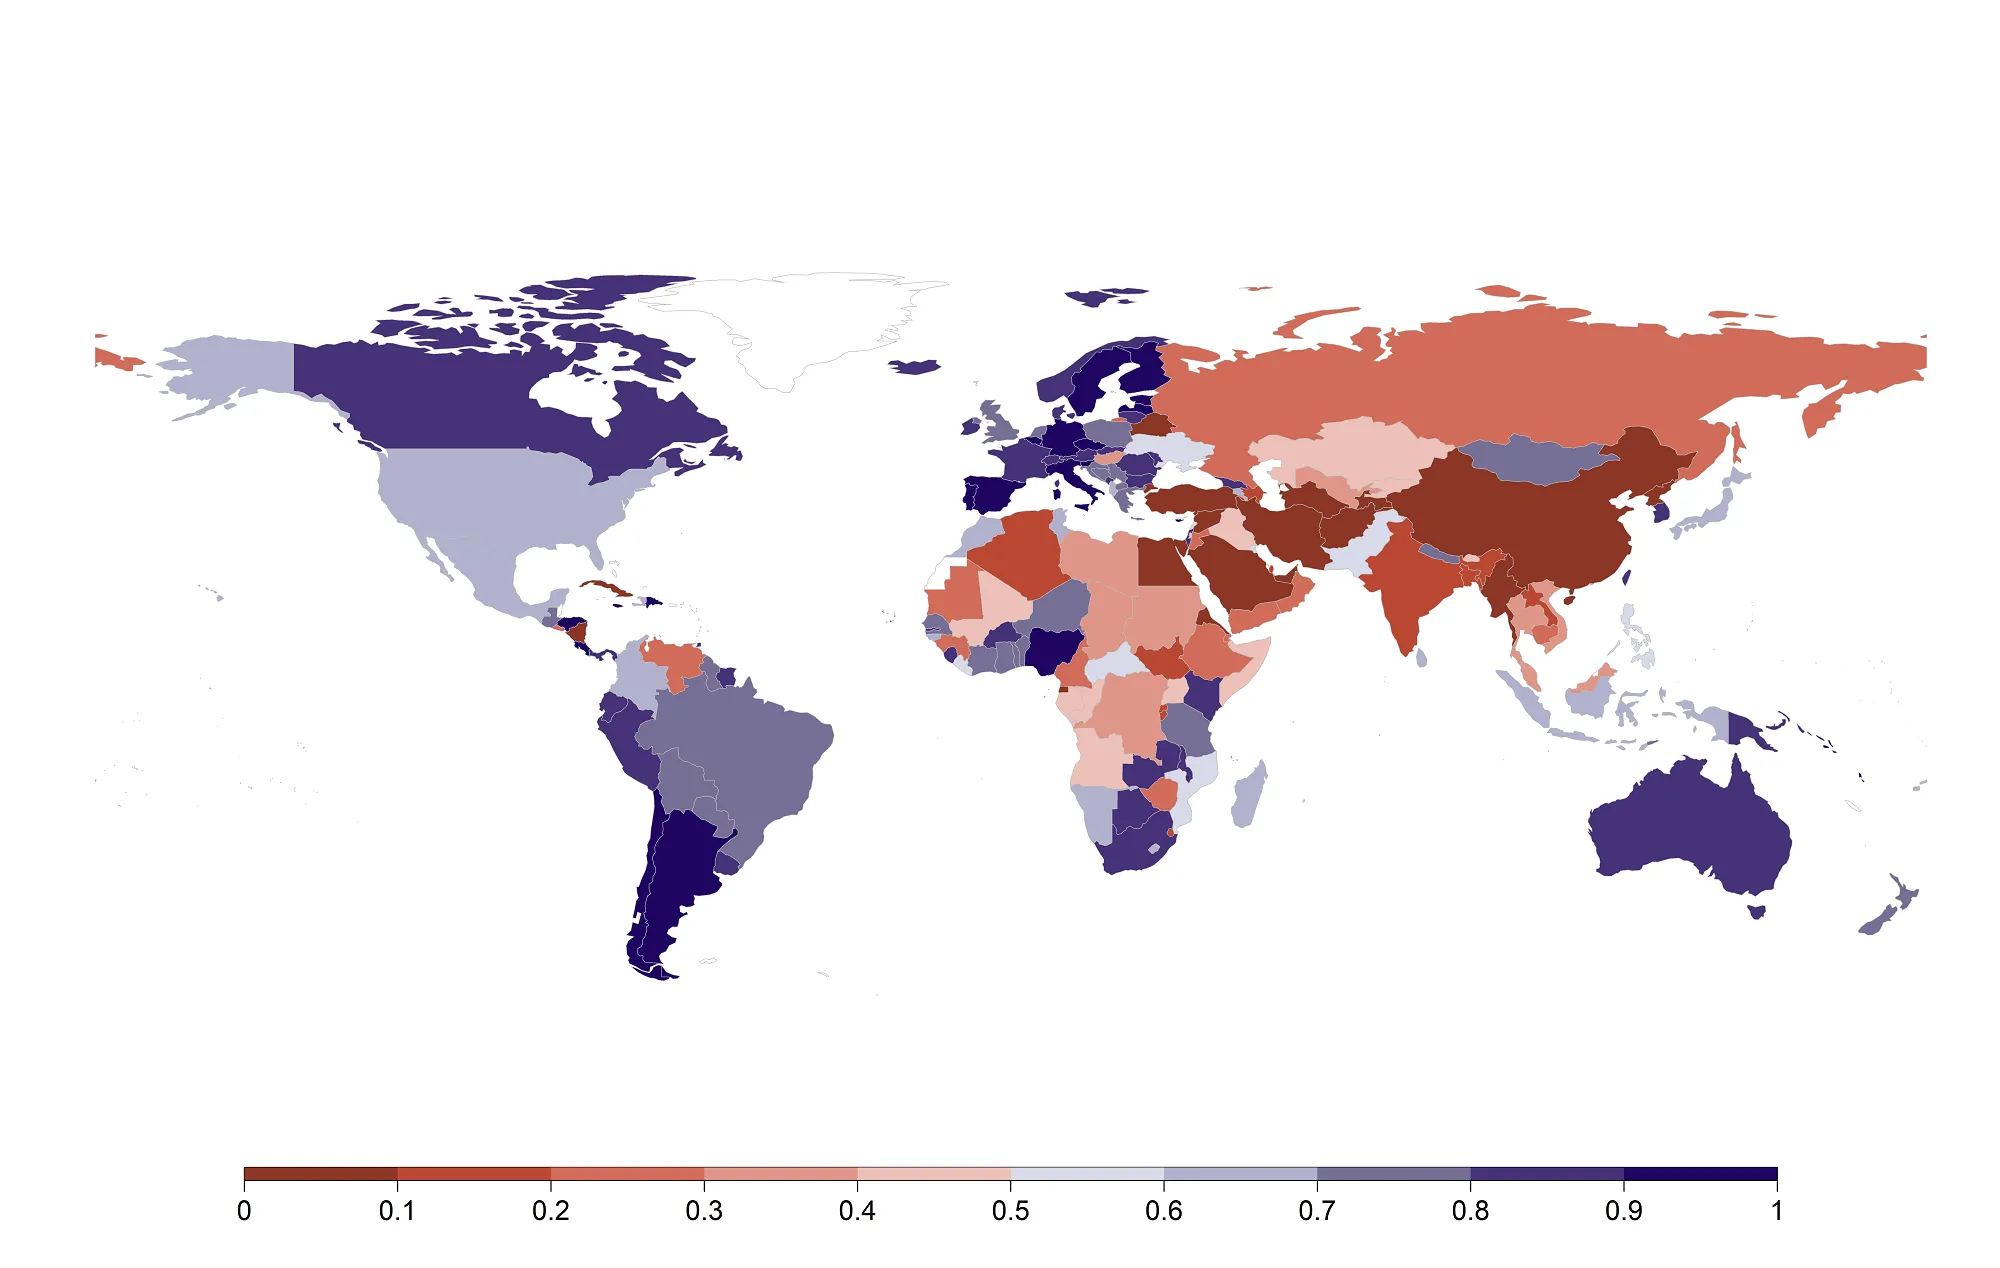 Weltkarte, die den academic freedom index abbildet